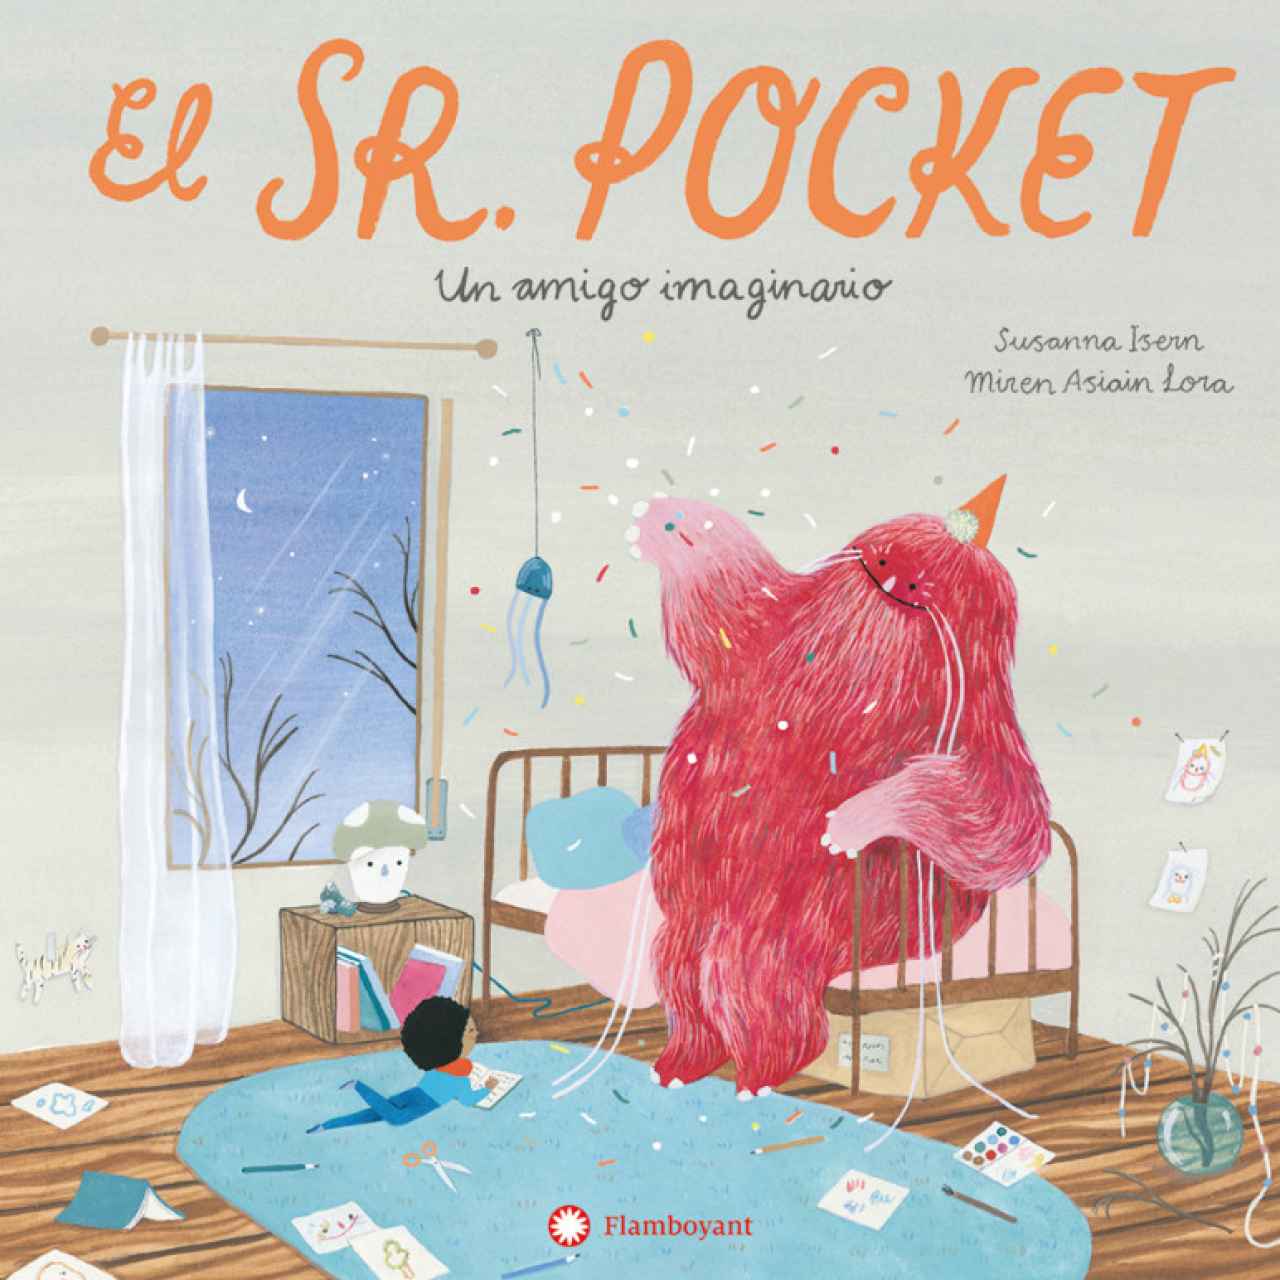 'El Sr. Pocket. Un amigo imaginario', un libro de Susanna Isern